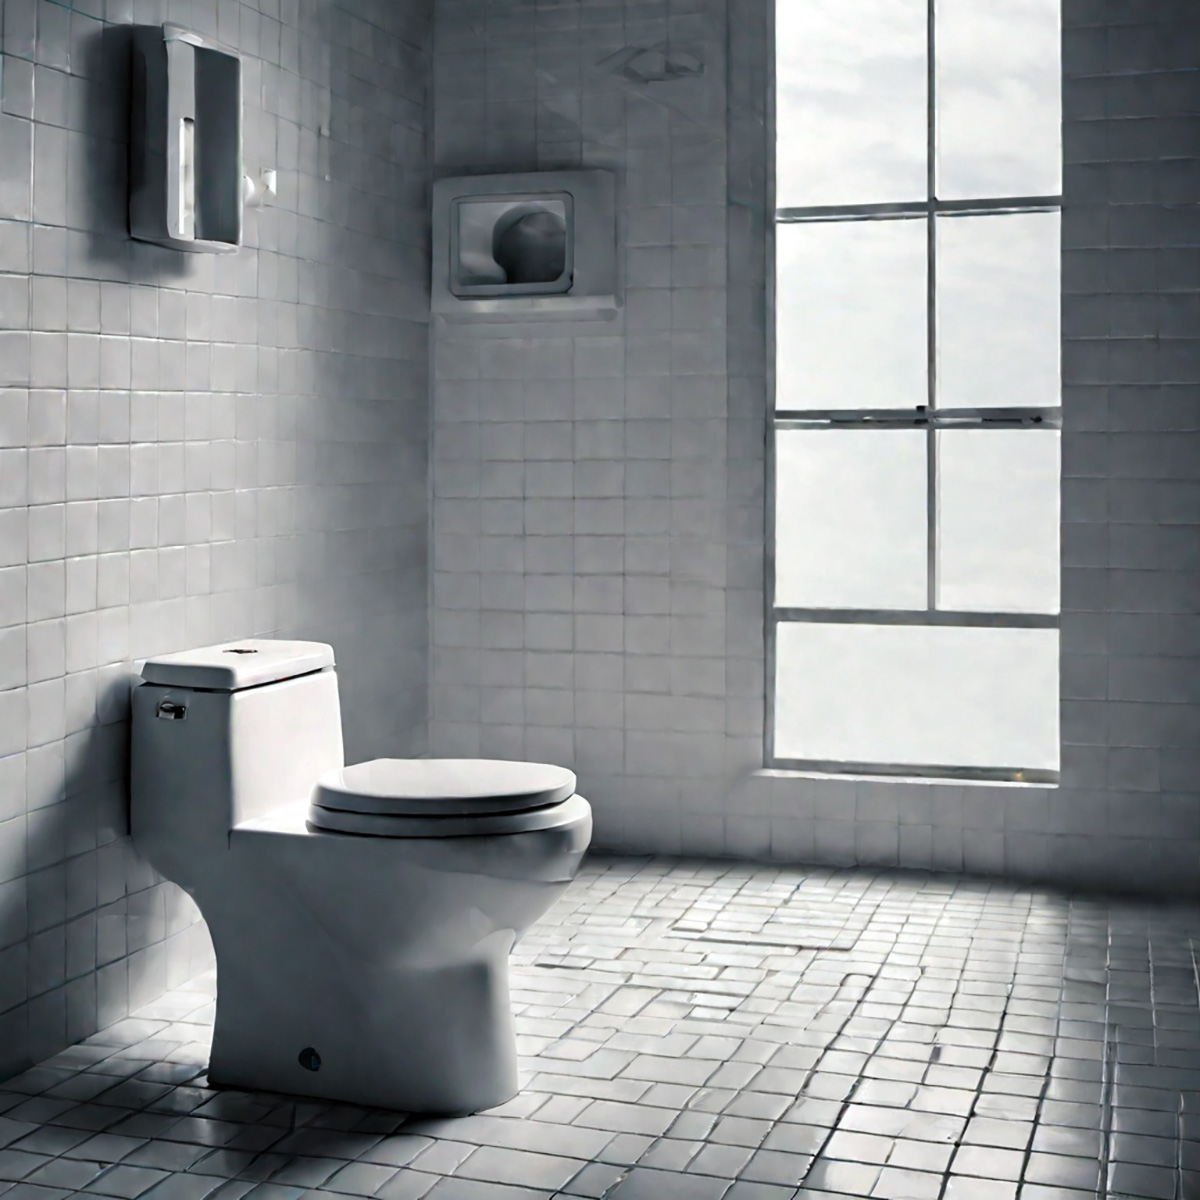 Rüyada Tuvalet Görmek Ne Anlama Gelir?